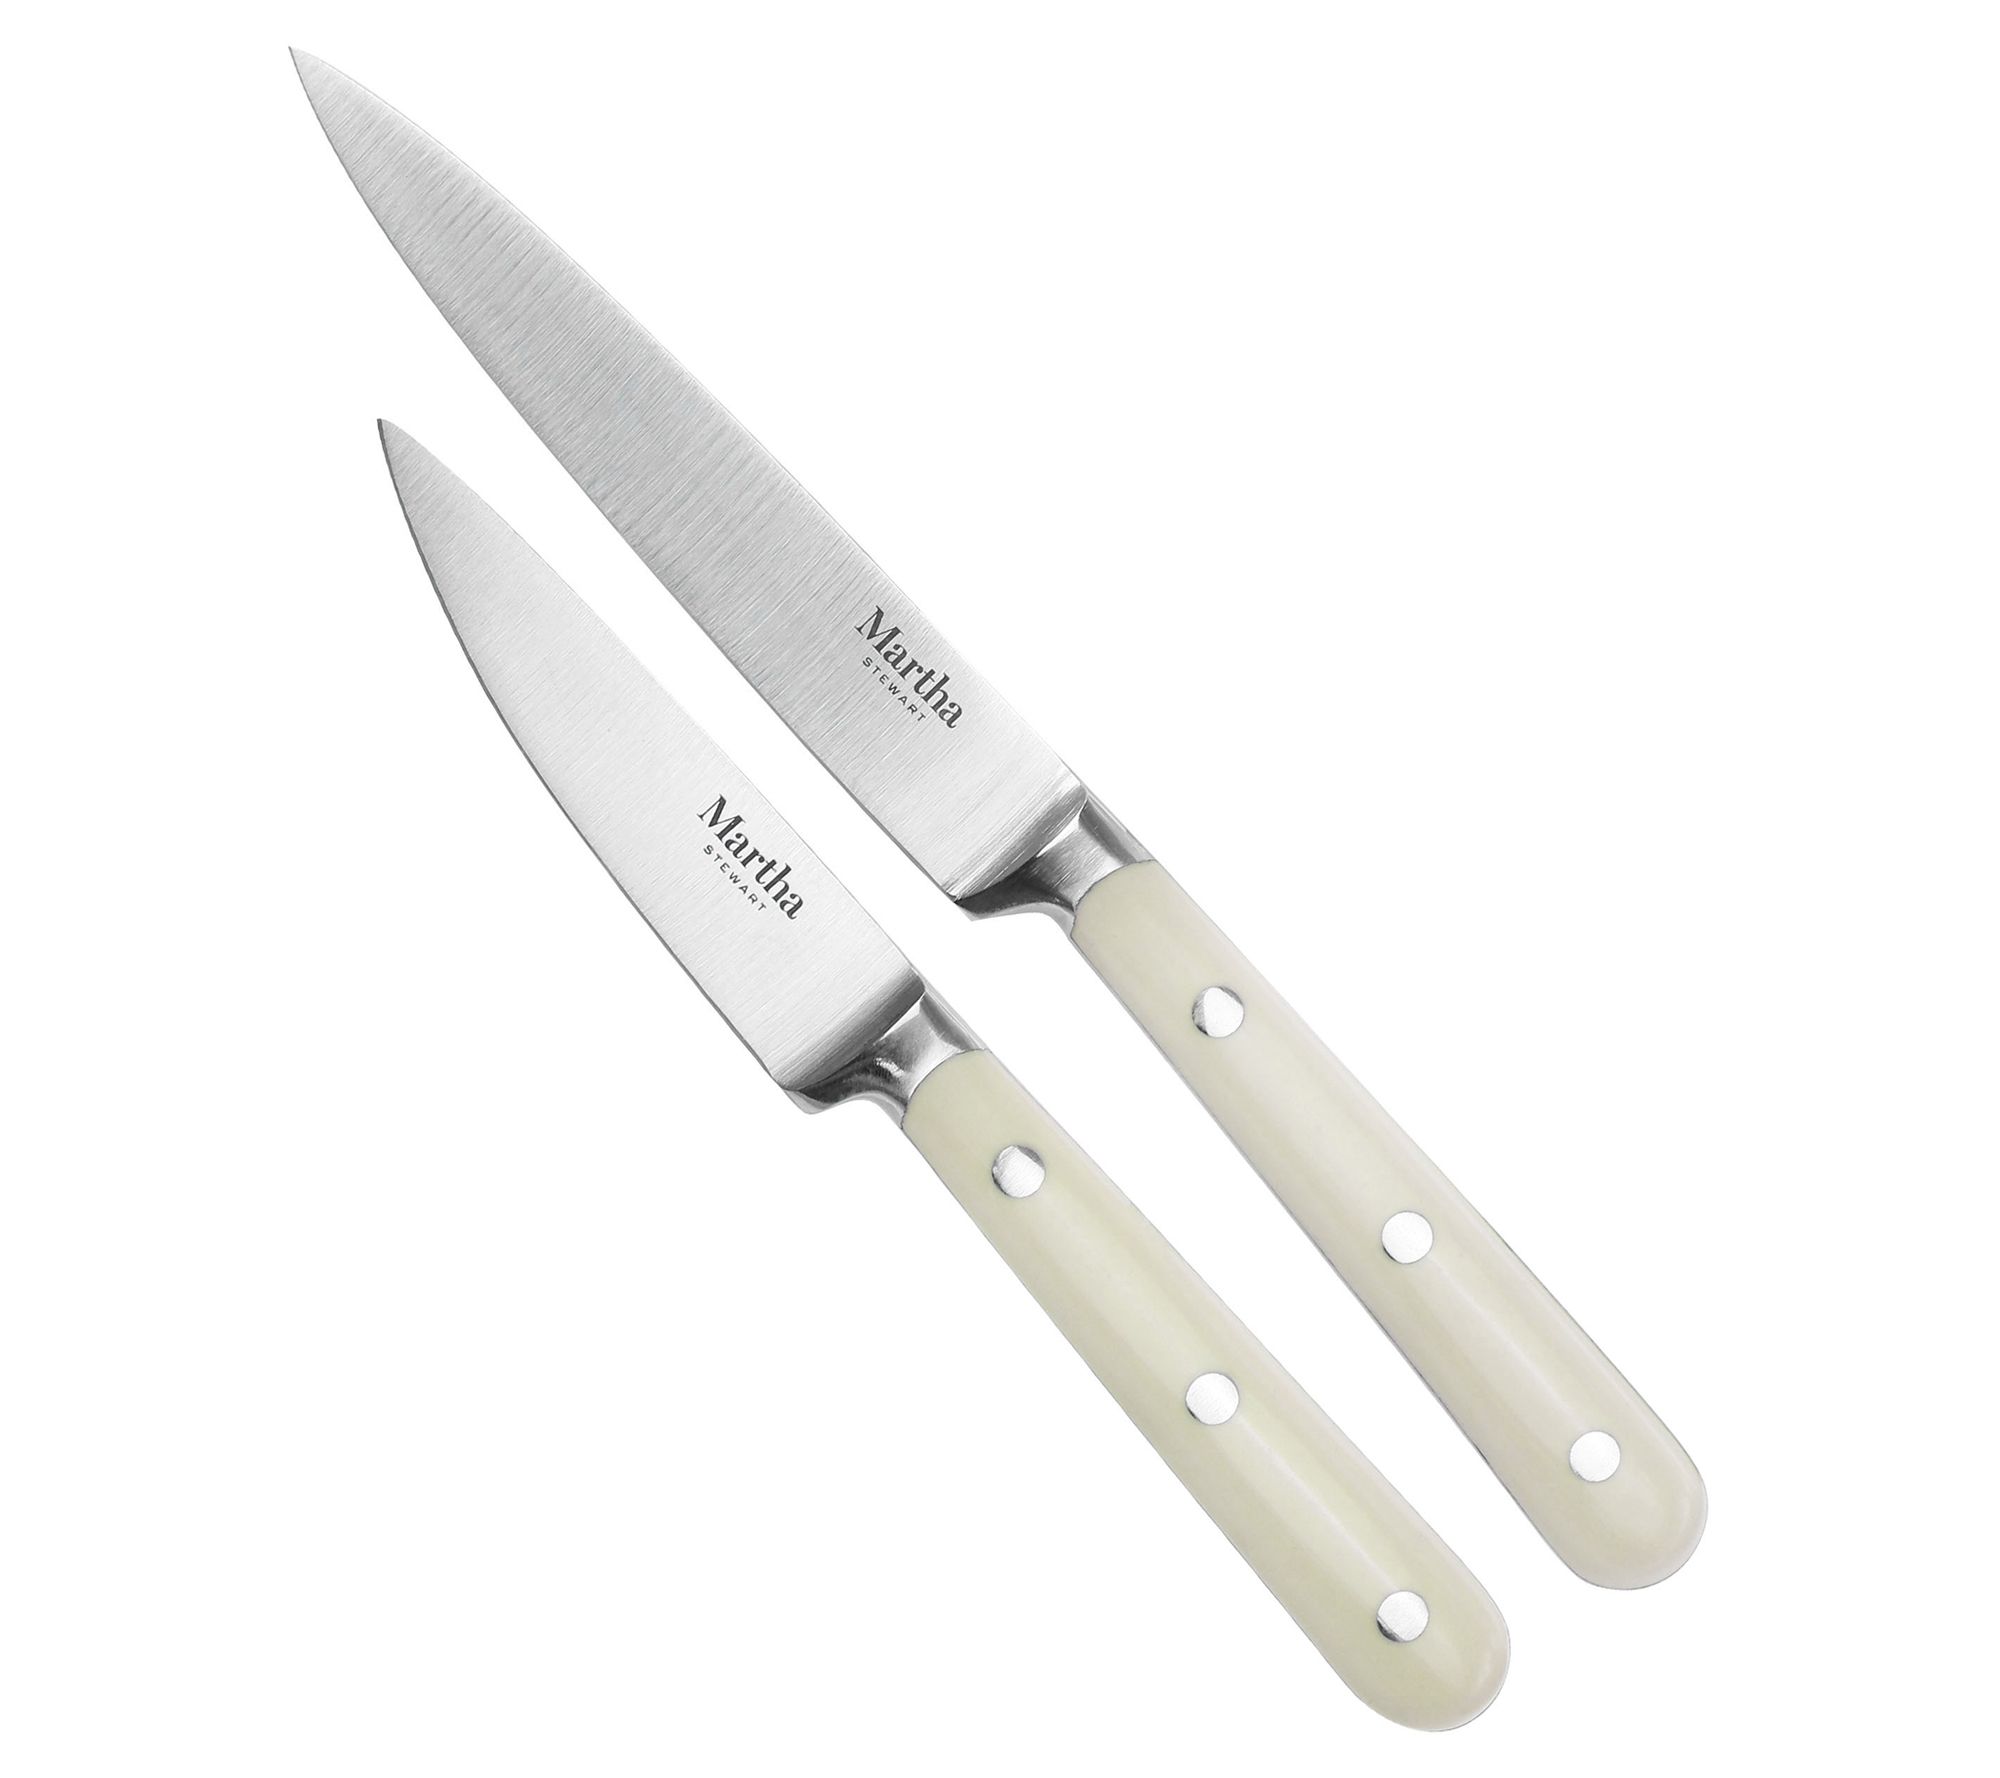 Martha Stewart Cream Stainless Steel 14 Piece Cutlery & Knife